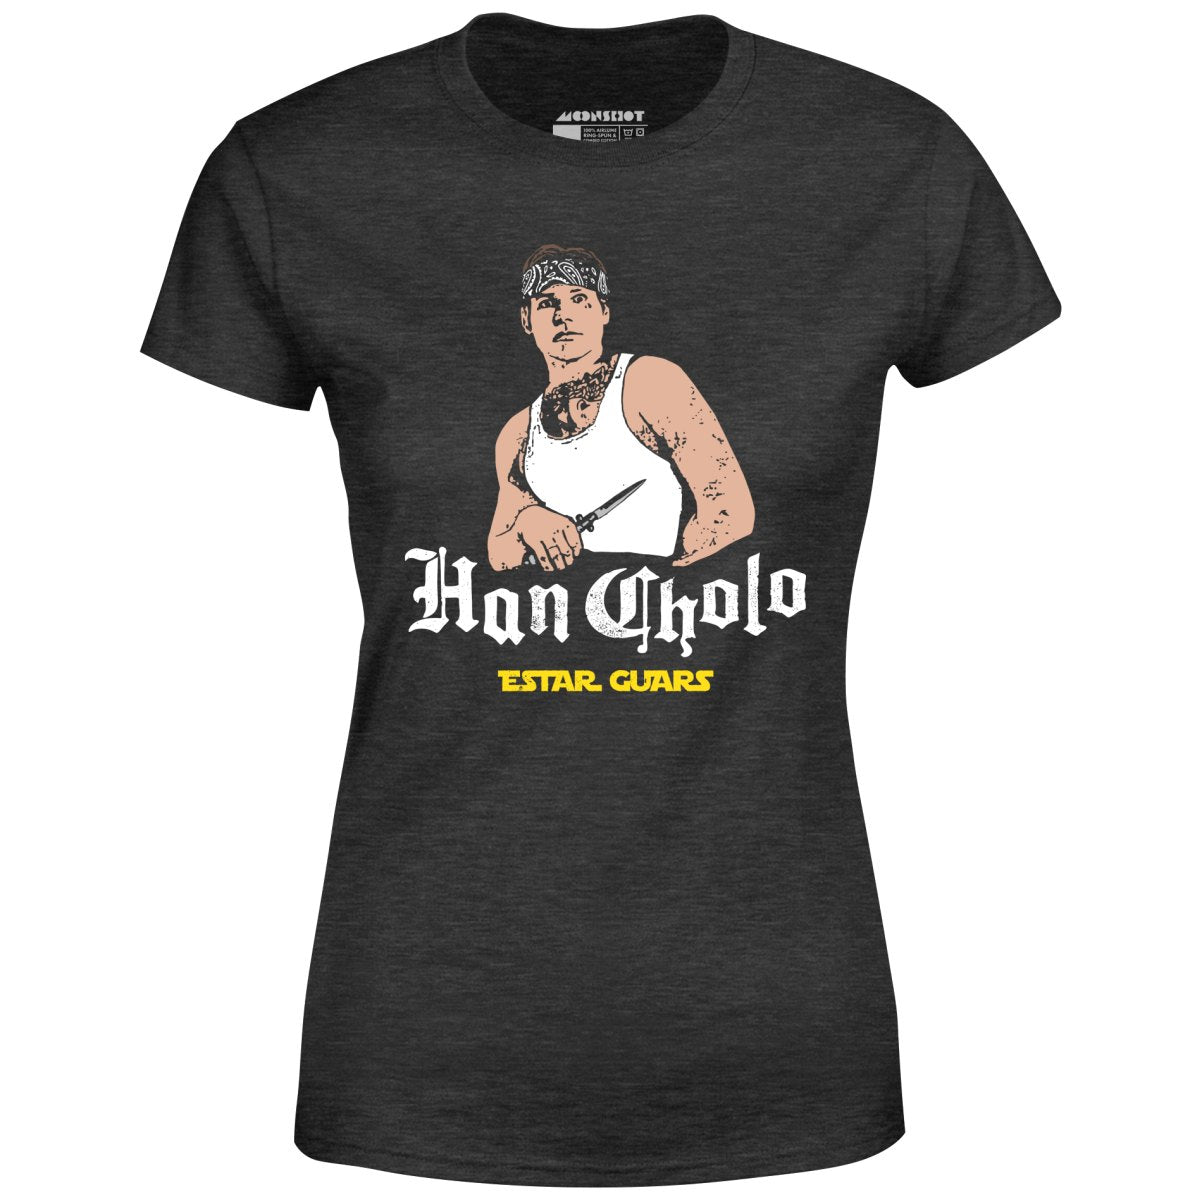 Han Cholo Estar Guars - Women's T-Shirt